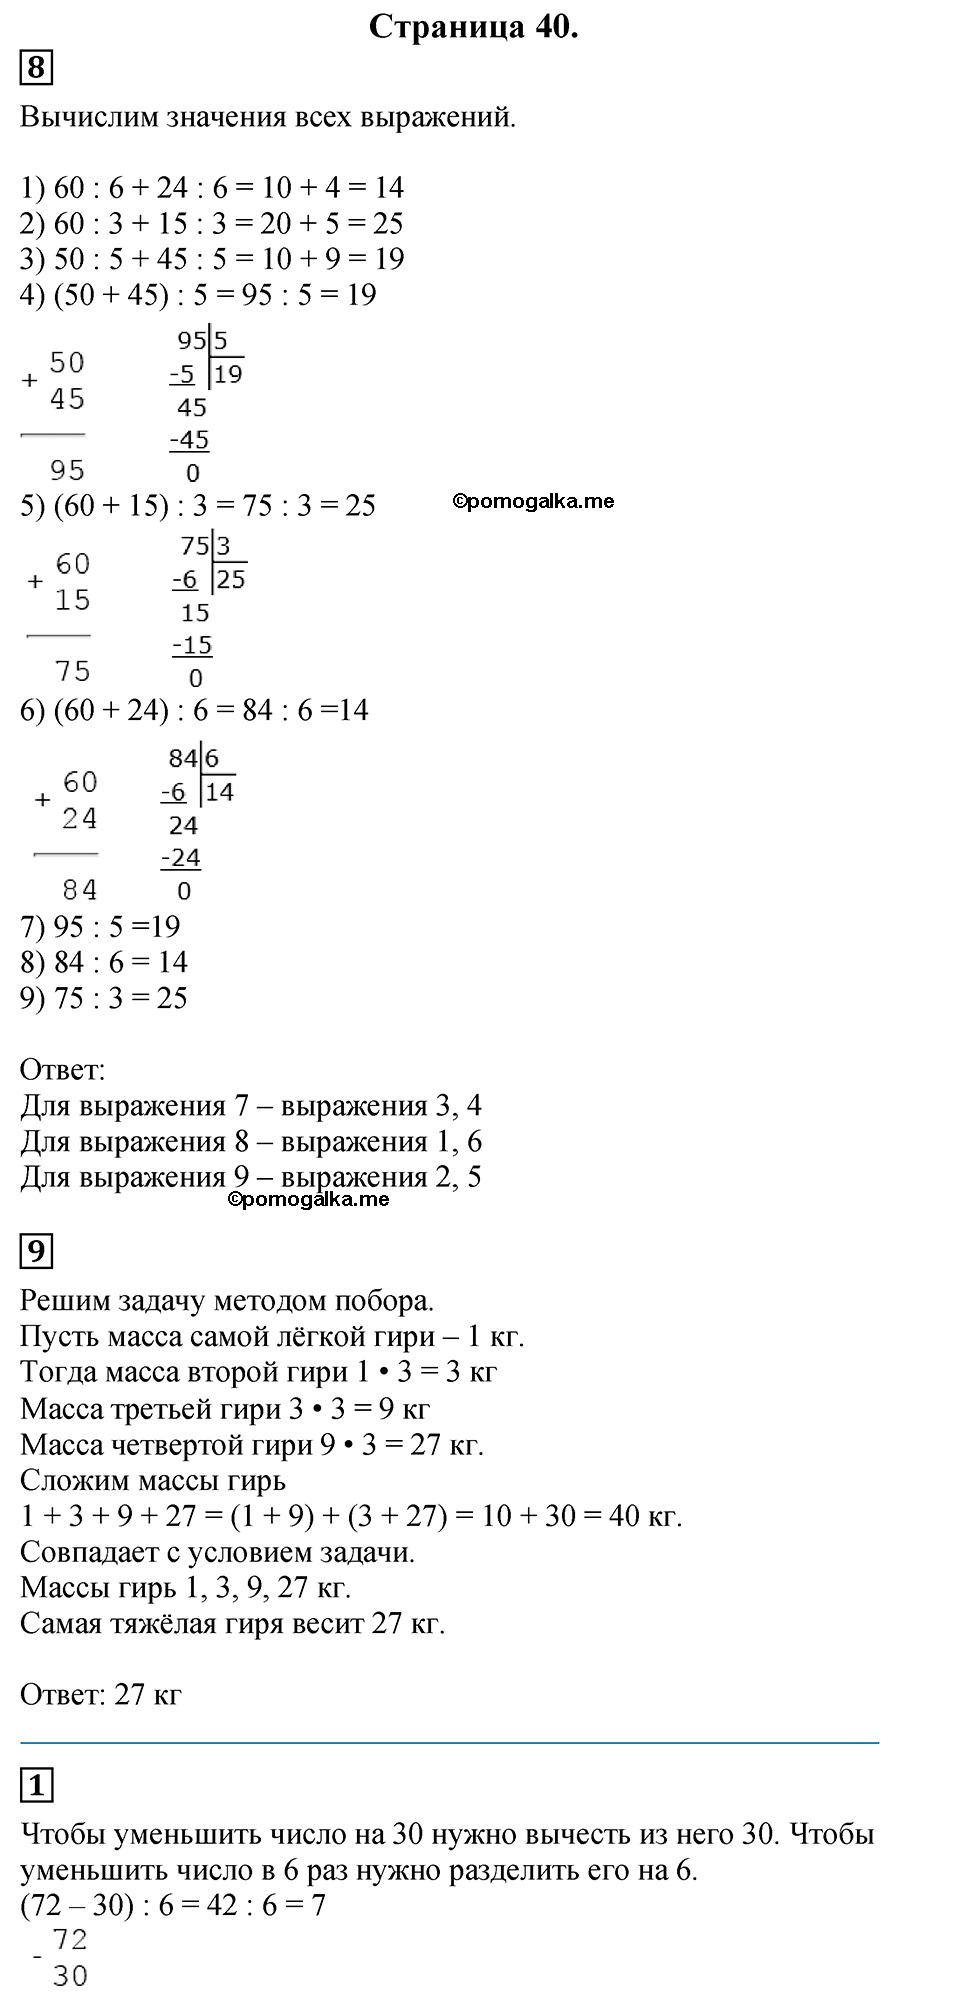 Страница №40 Часть 2 математика 3 класс Дорофеев